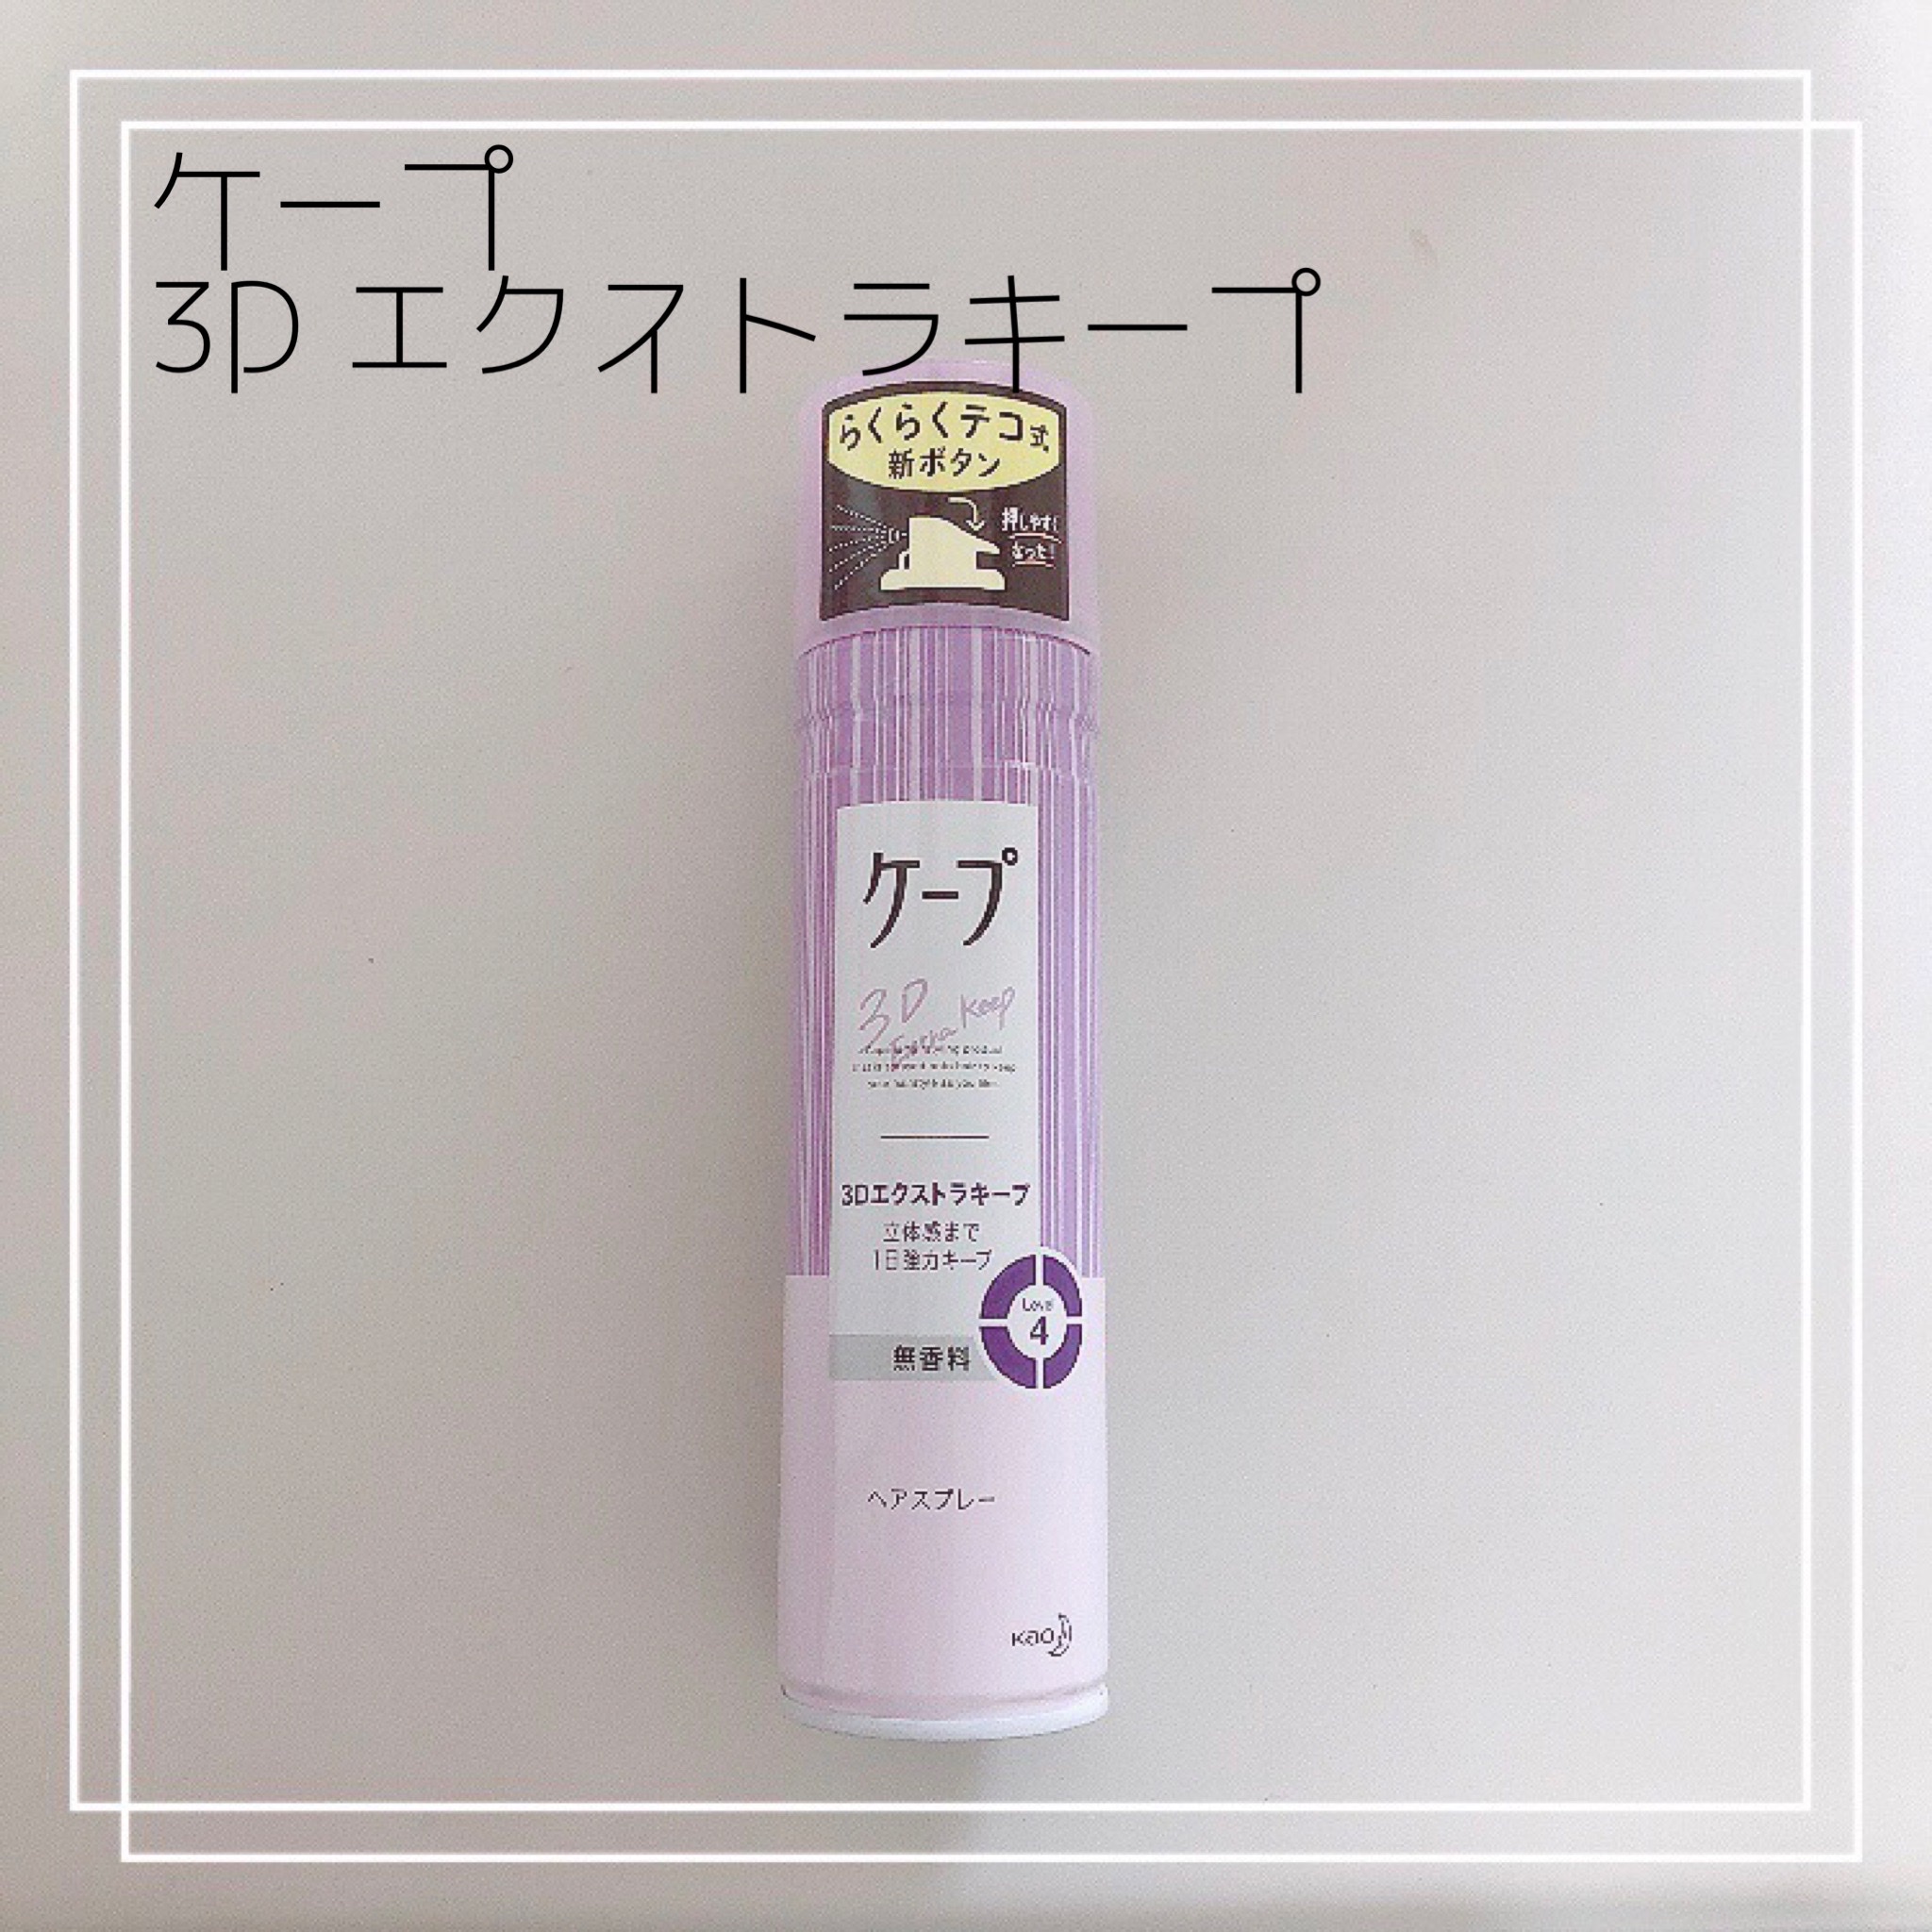 ケープ ケープ 3dエクストラキープ 無香料の口コミ写真 By ばぶちゅうさん 1枚目 美容 化粧品情報はアットコスメ